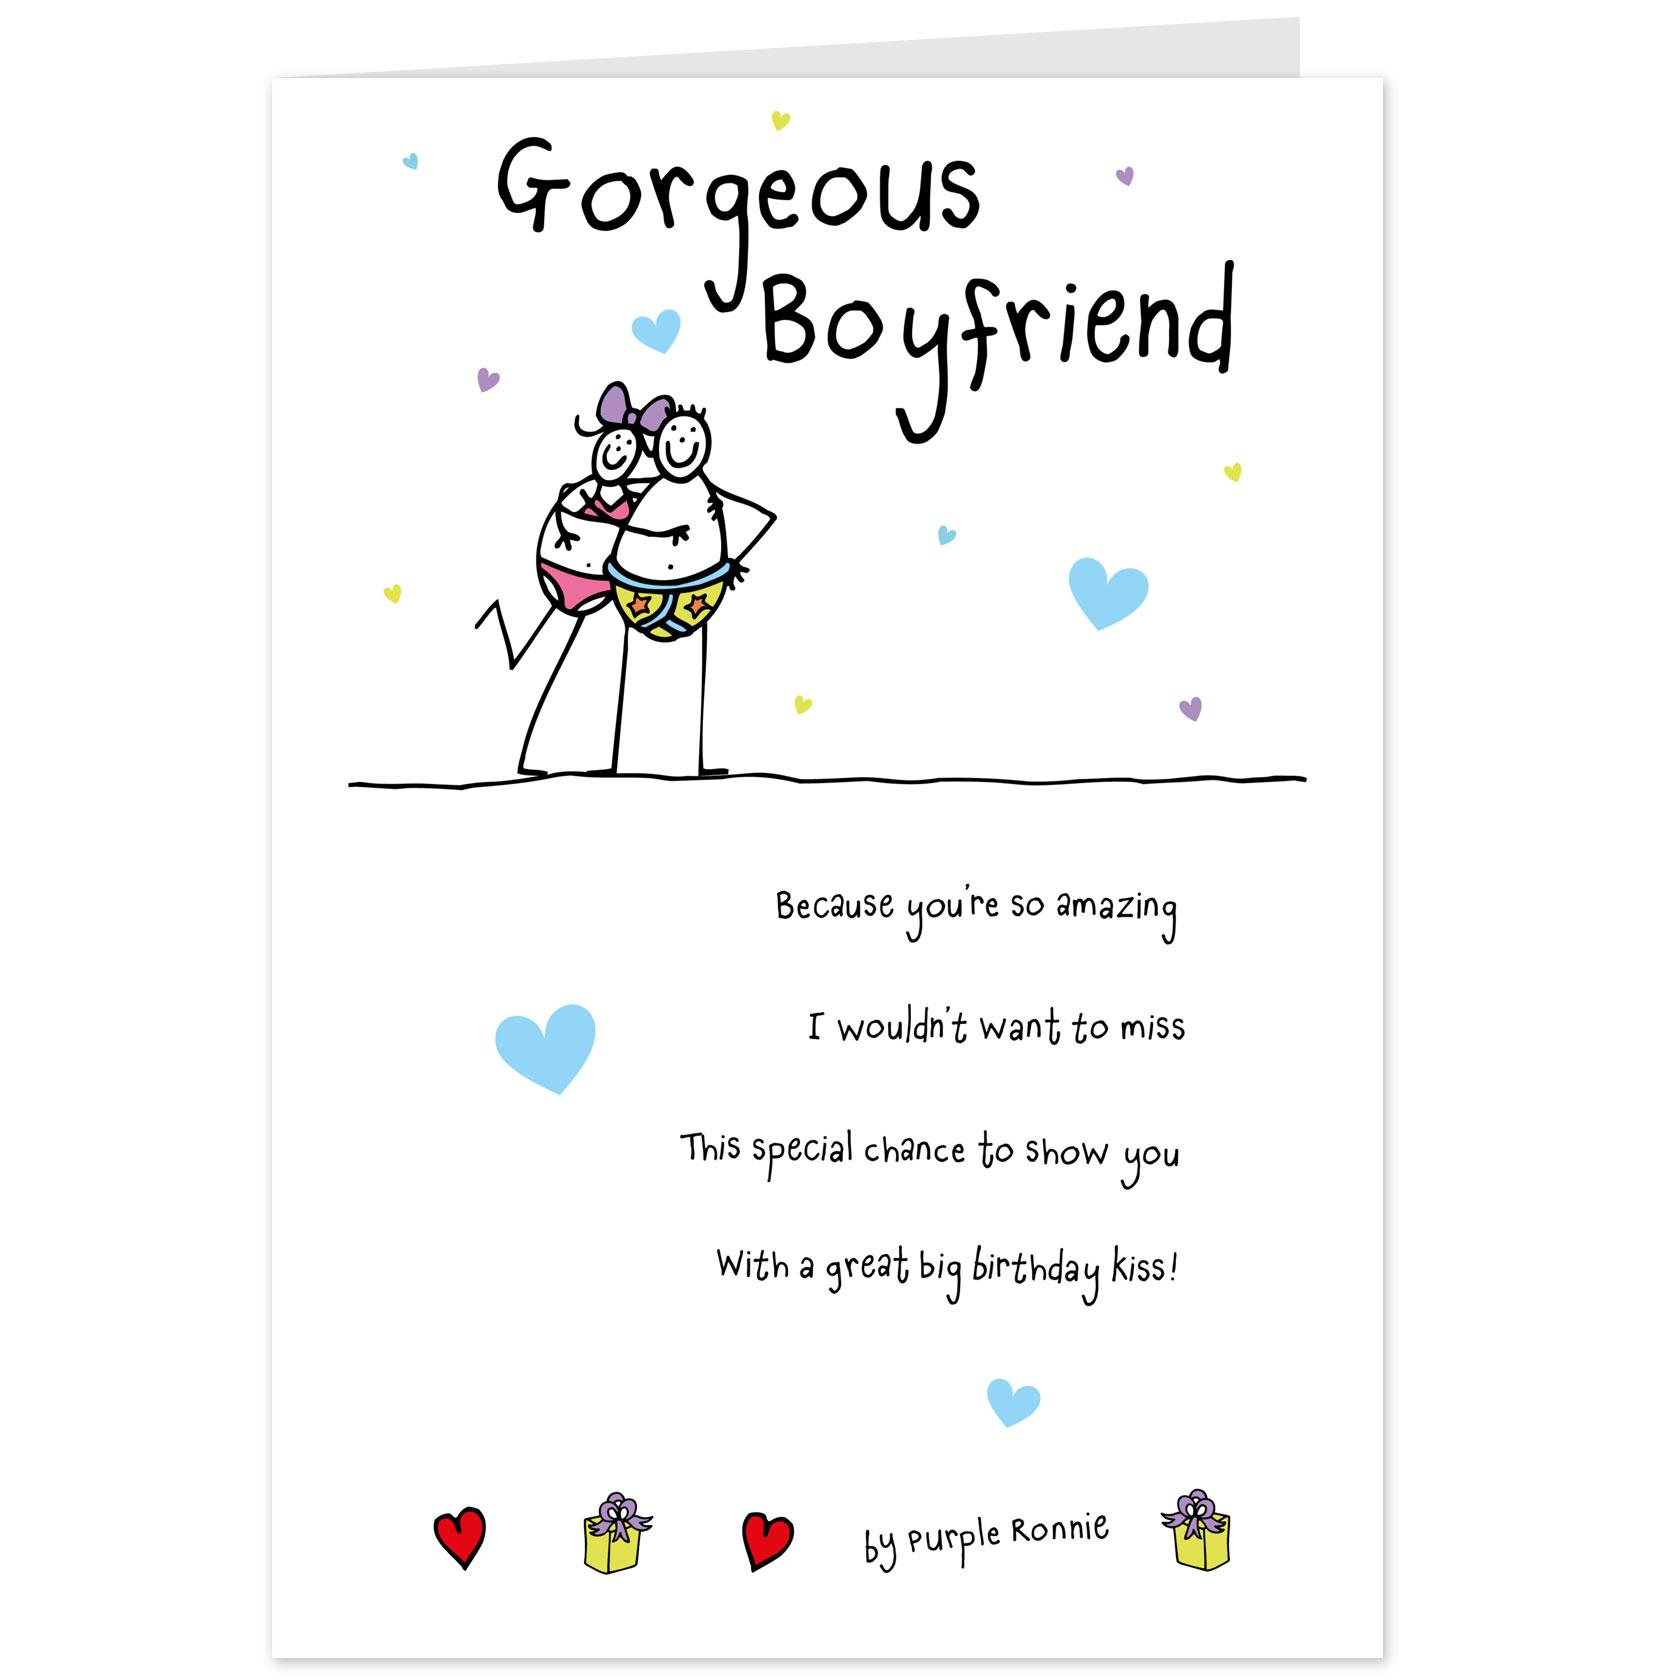 Funny Birthday Card Ideas For Boyfriend 99 Ecards For Boyfriends Birthday Happy Birthday To The Best